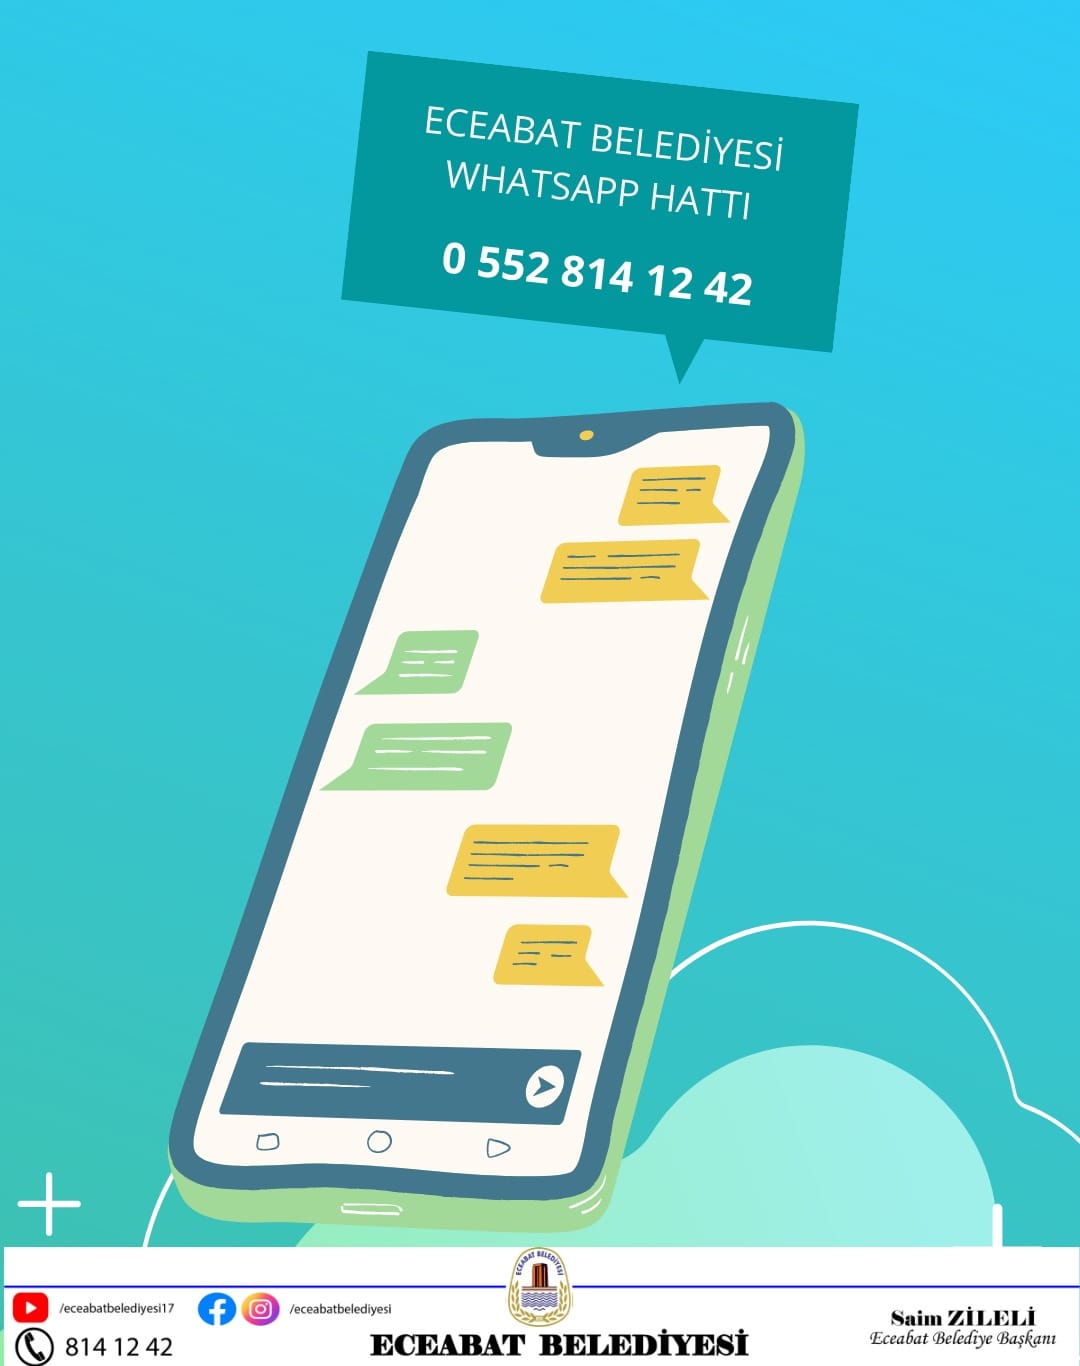 Eceabat’ta Belediye iletişimi güçlendiriyor: WhatsApp hattı hizmete açıldı